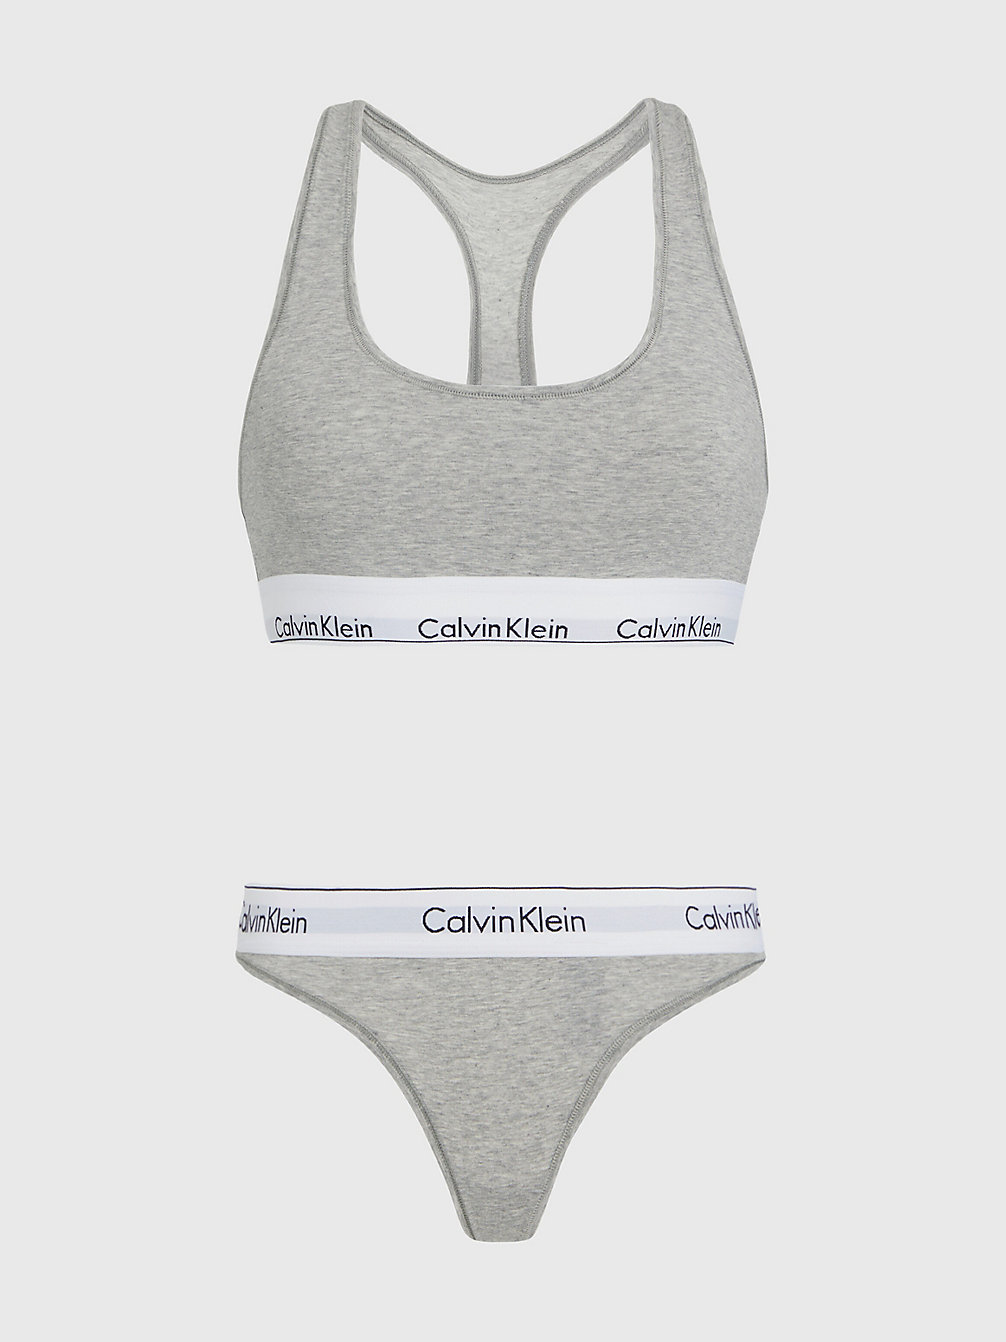 GREY HEATHER Bralette And Bikini Set - Modern Cotton undefined women Calvin Klein